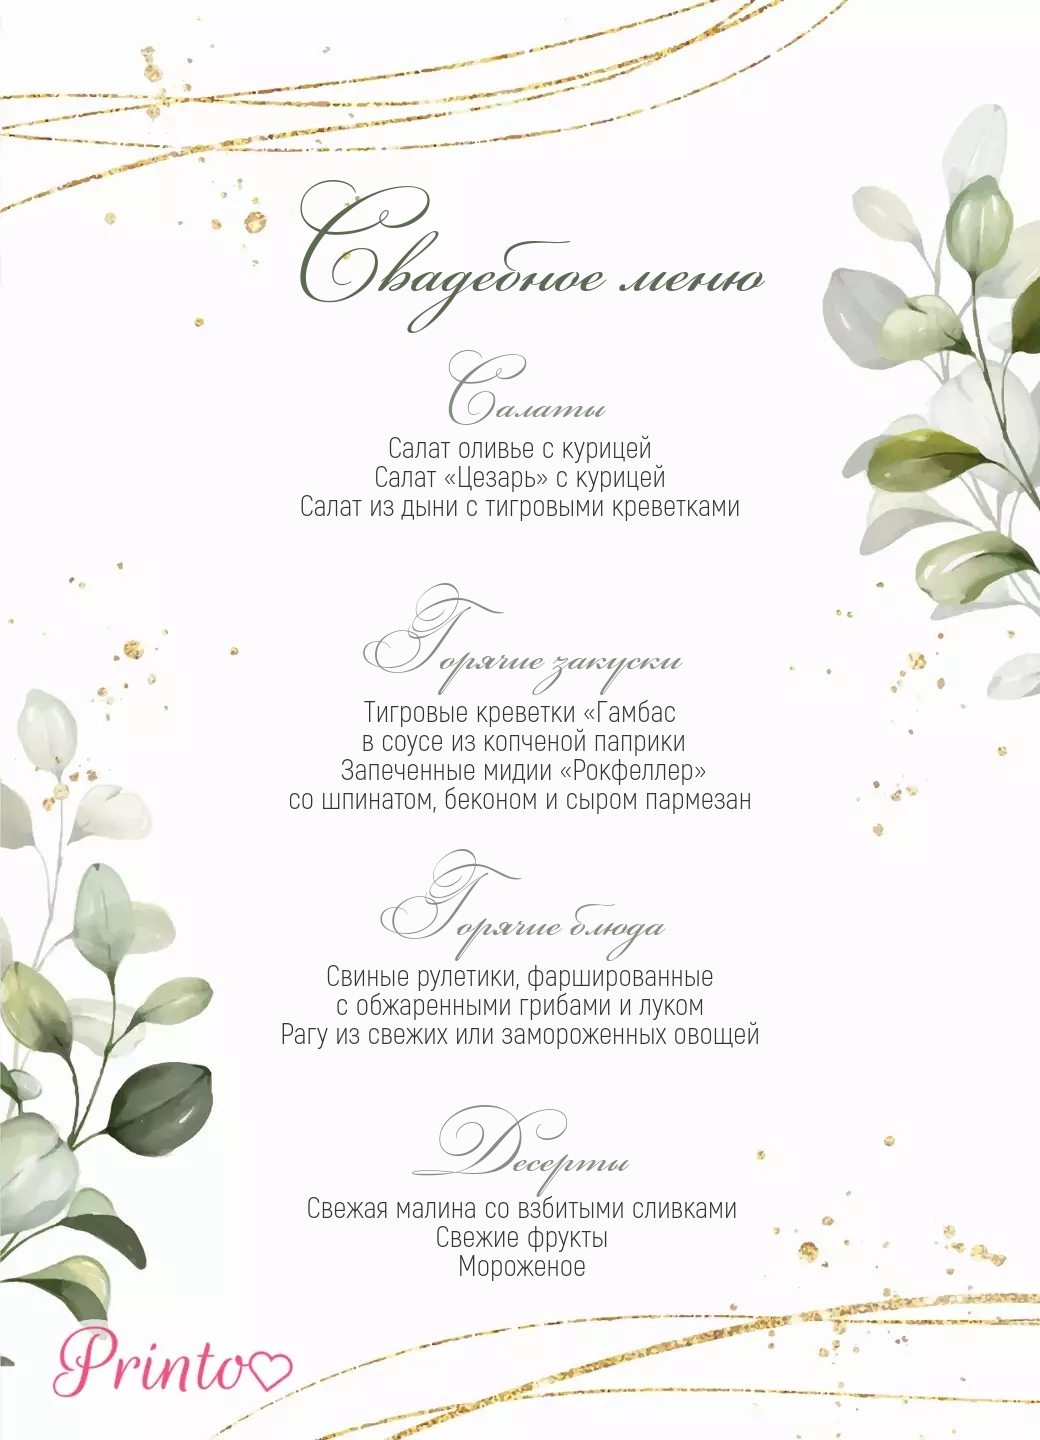 Шаблон свадебного меню "Оливия"